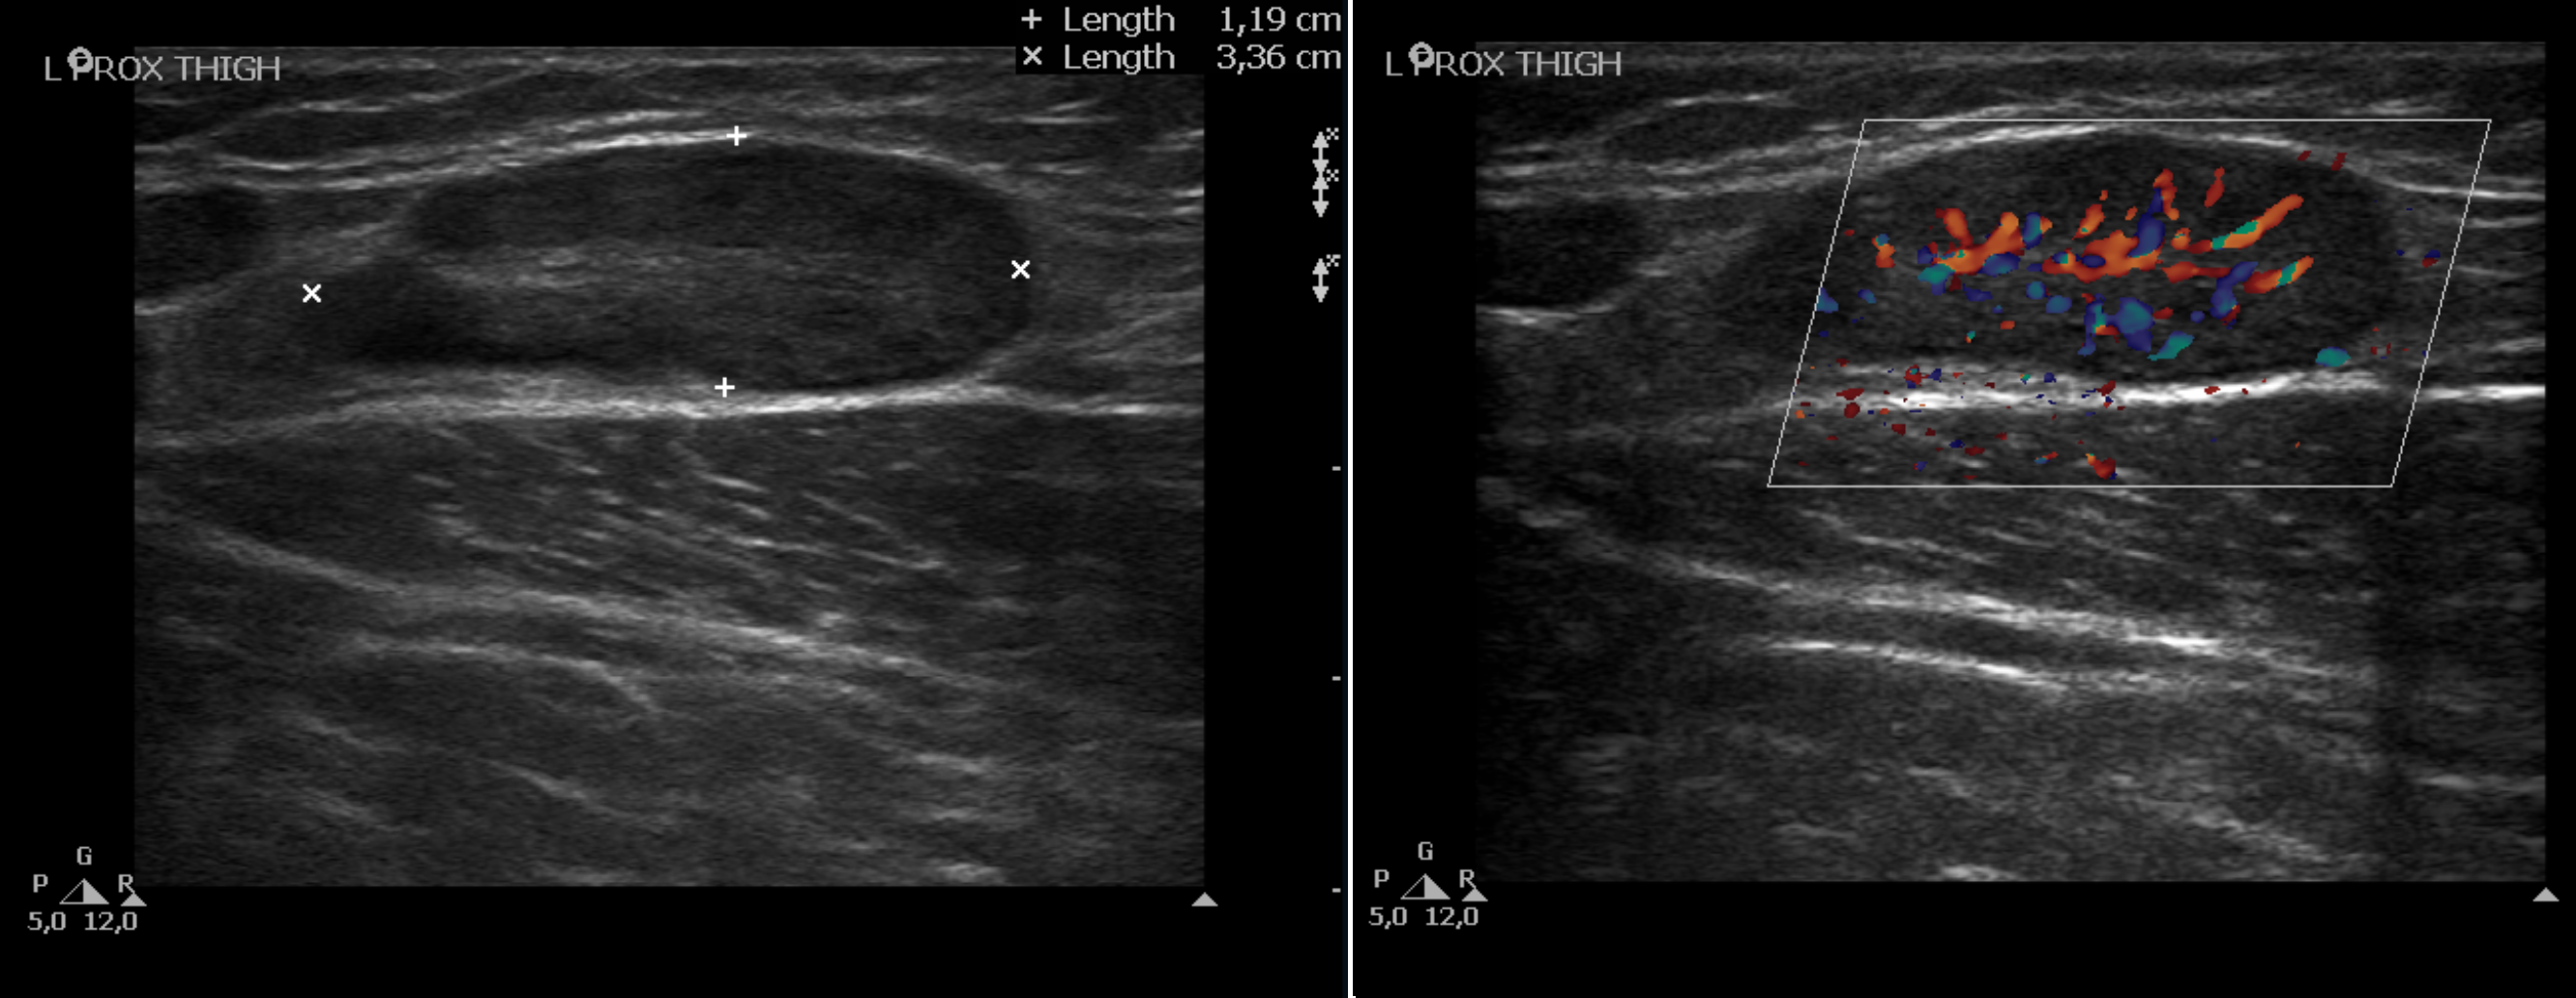 groin lymph nodes ultrasound